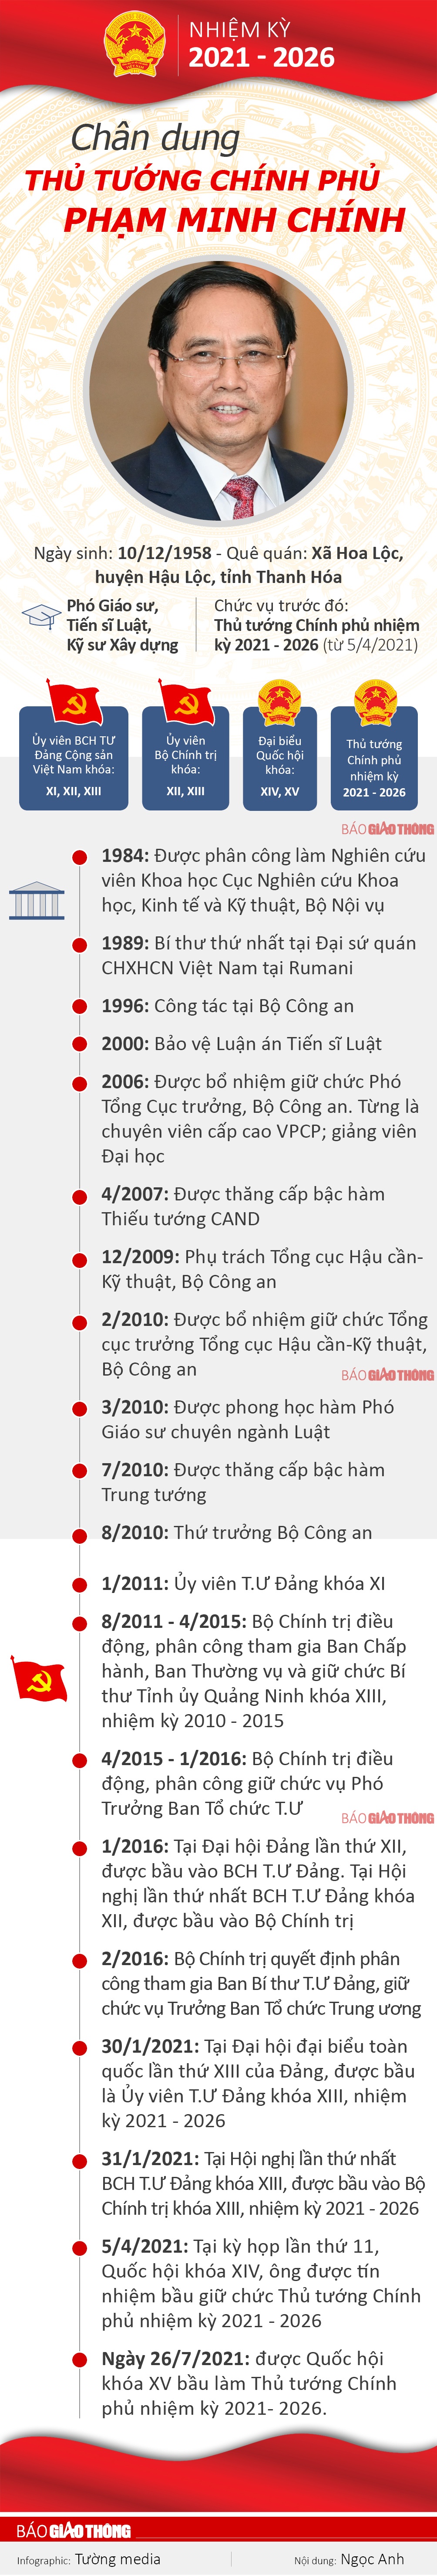 [Infographics] Chân dung Thủ tướng nhiệm kỳ 2021 - 2026 Phạm Minh Chính - Ảnh 1